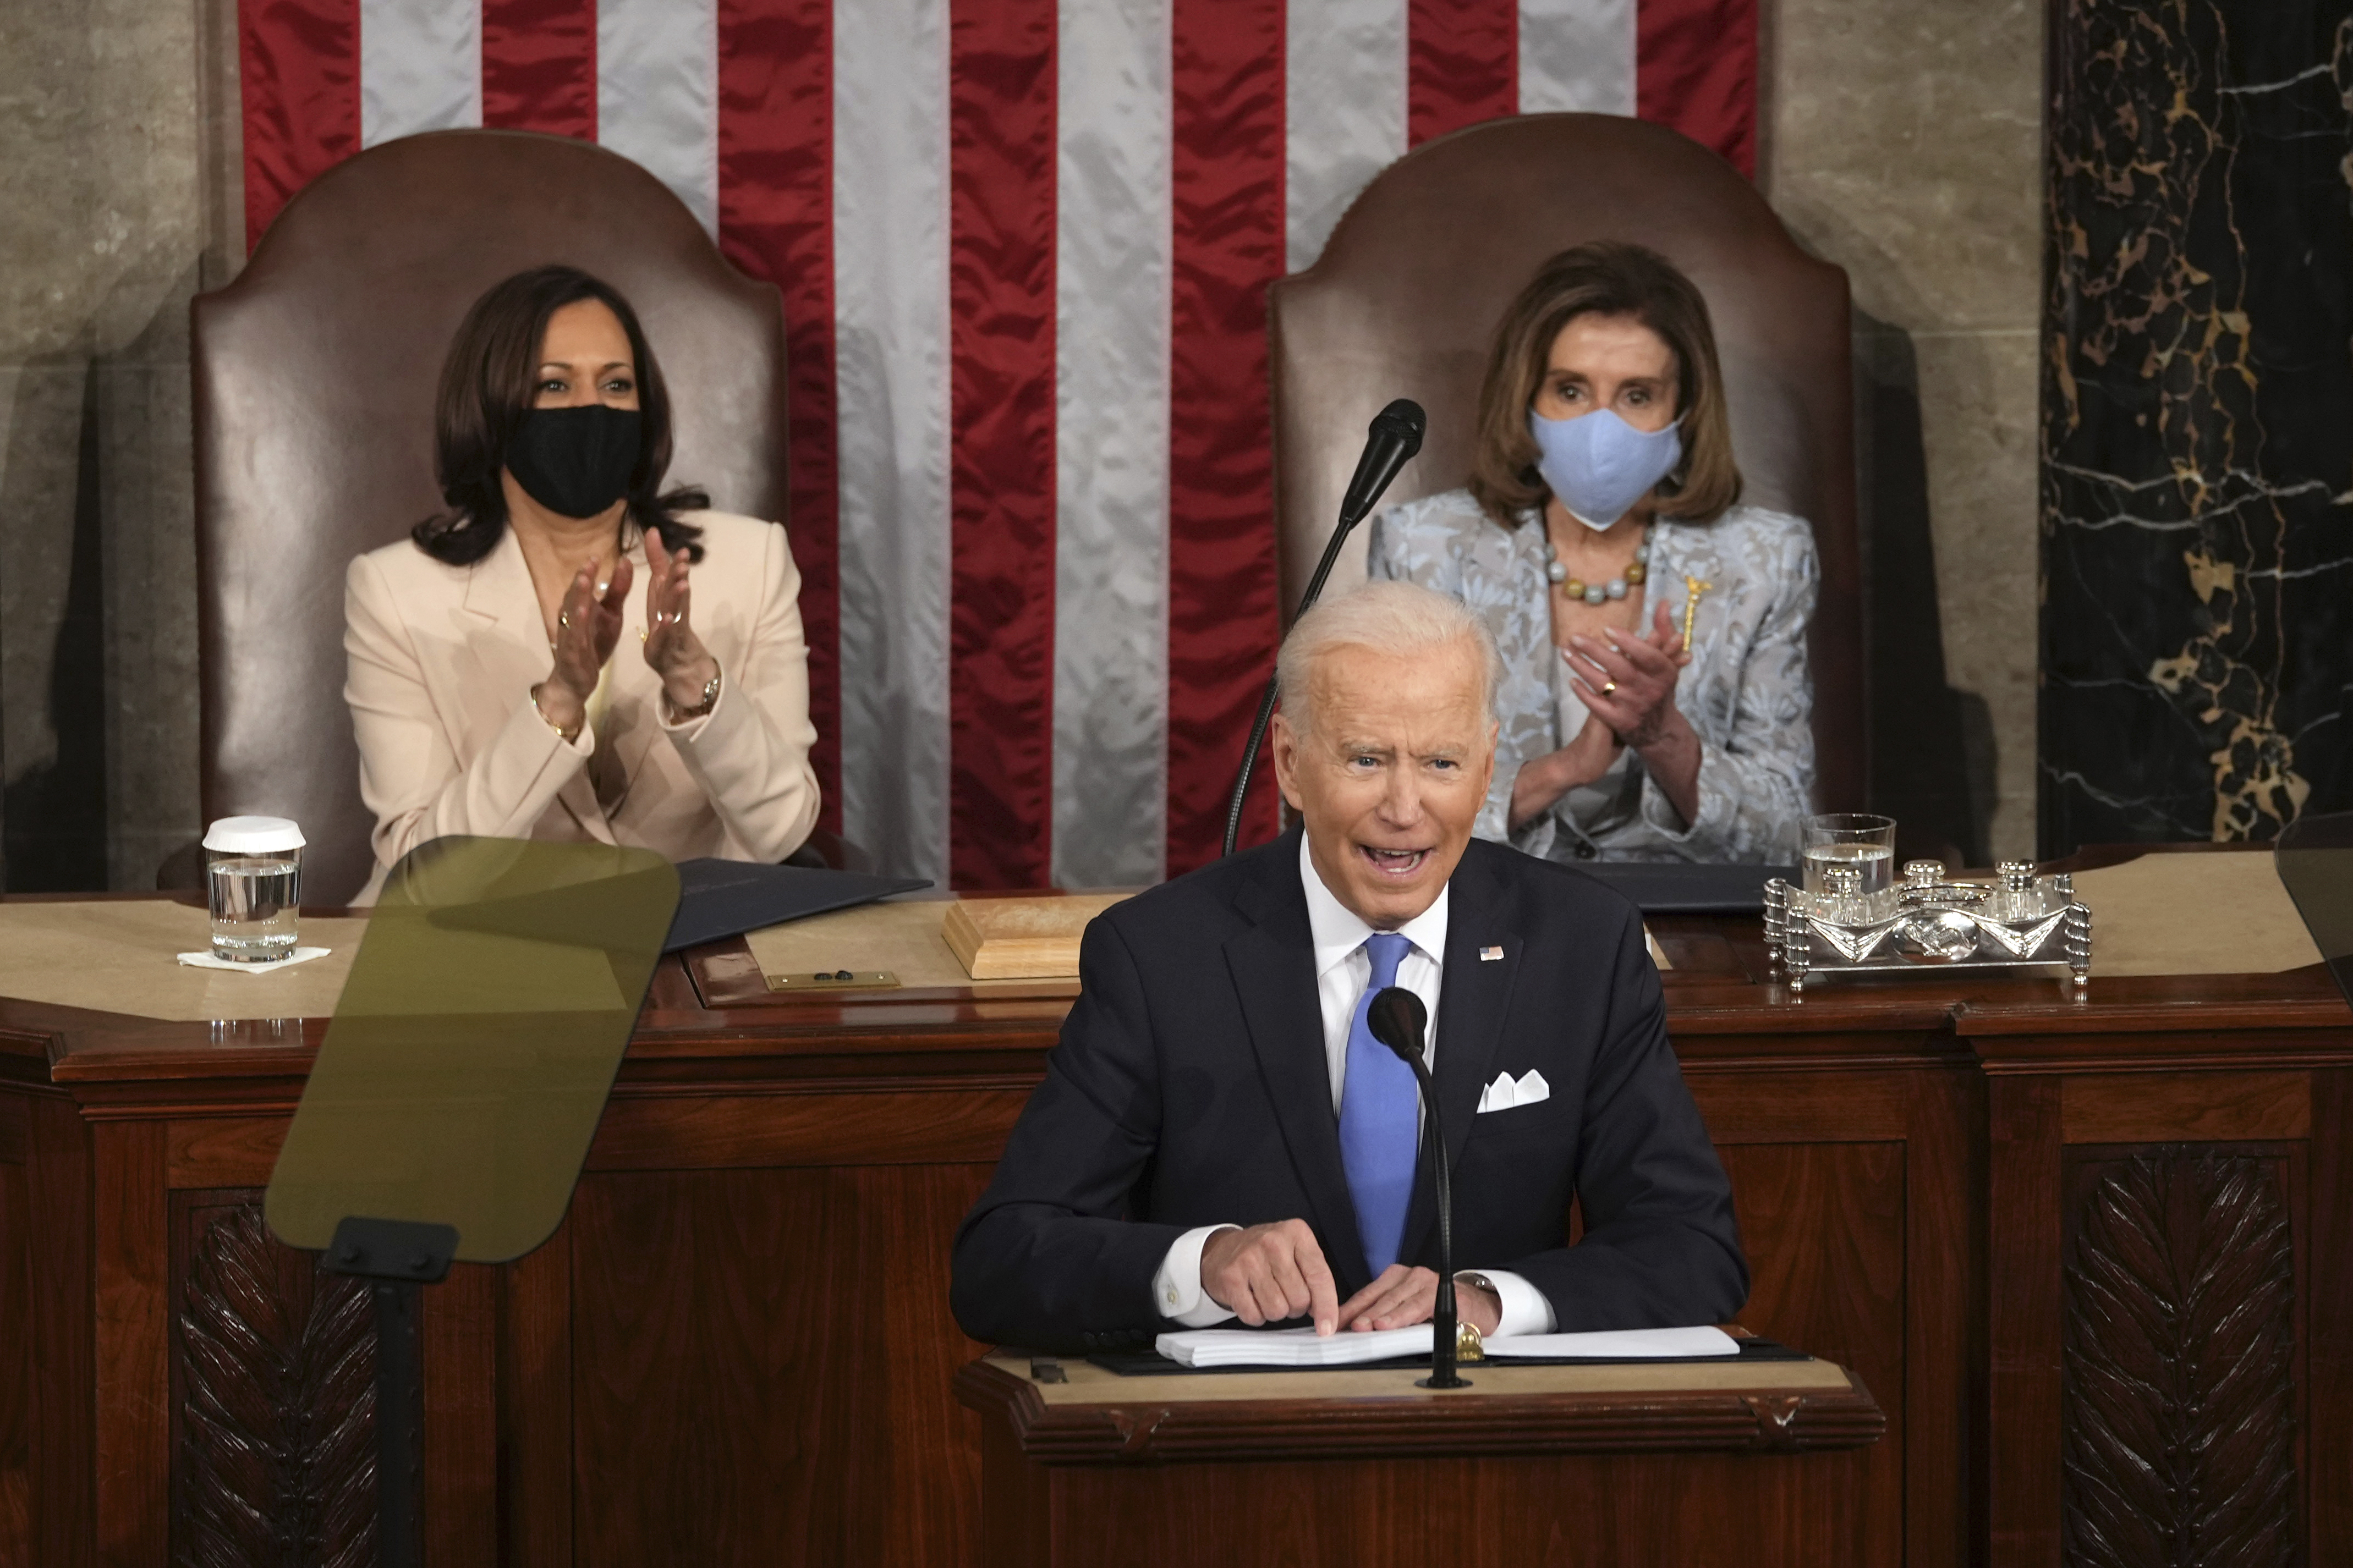 O'Reilly: 'Joe Biden sounds like Daddy Warbucks'